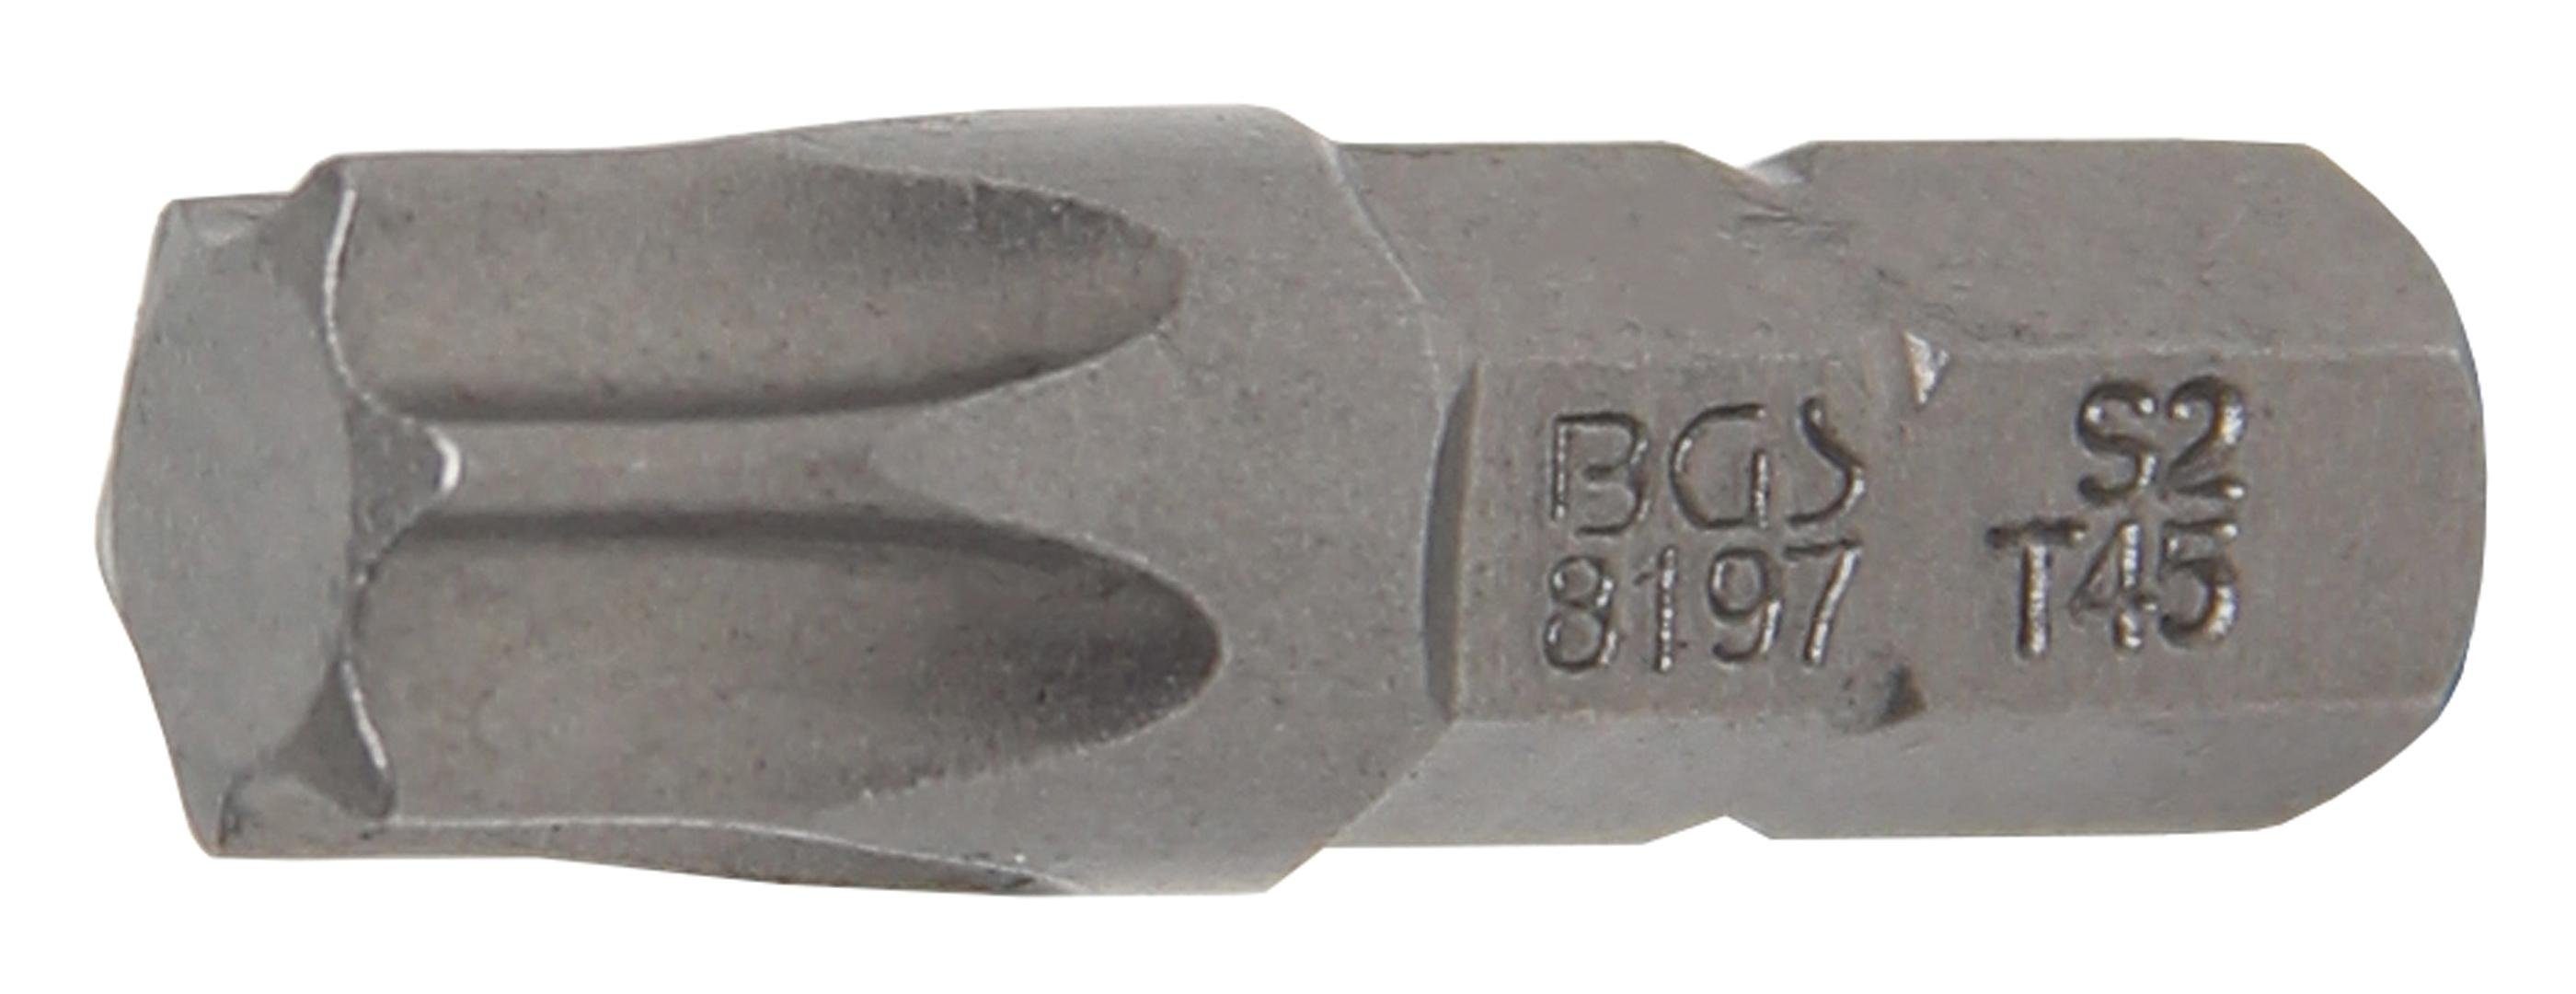 BGS technic Bit-Schraubendreher Bit, Antrieb Außensechskant 6,3 mm (1/4), T-Profil (für Torx) T45 | Schraubendreher